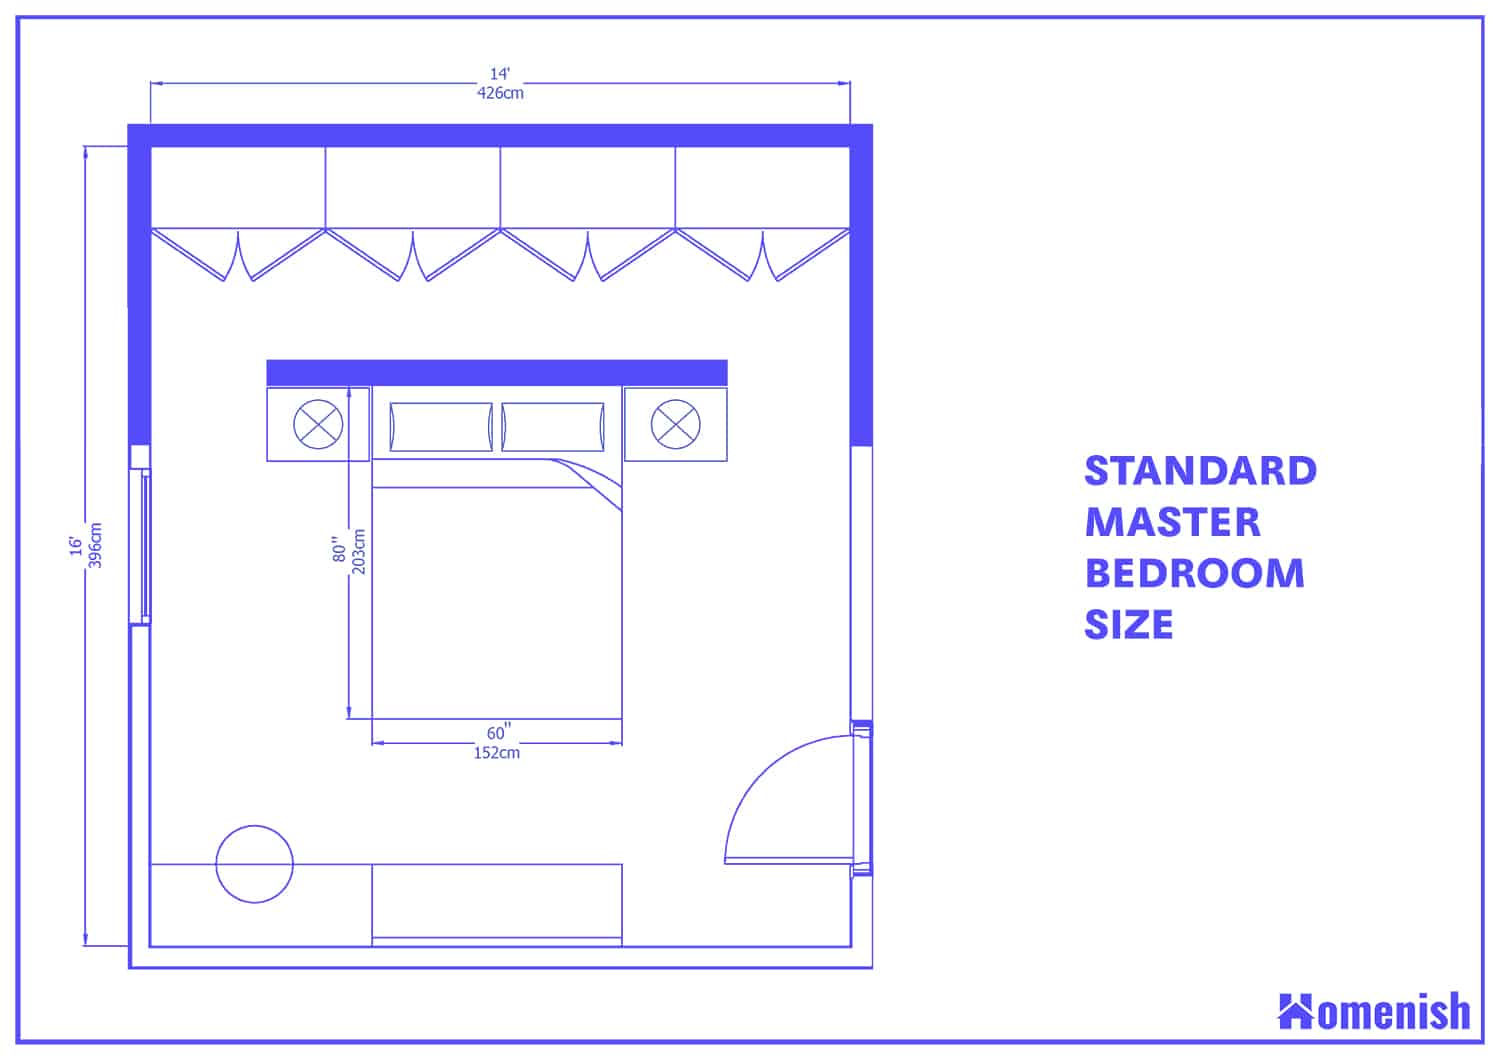 Standard Master Bedroom Size